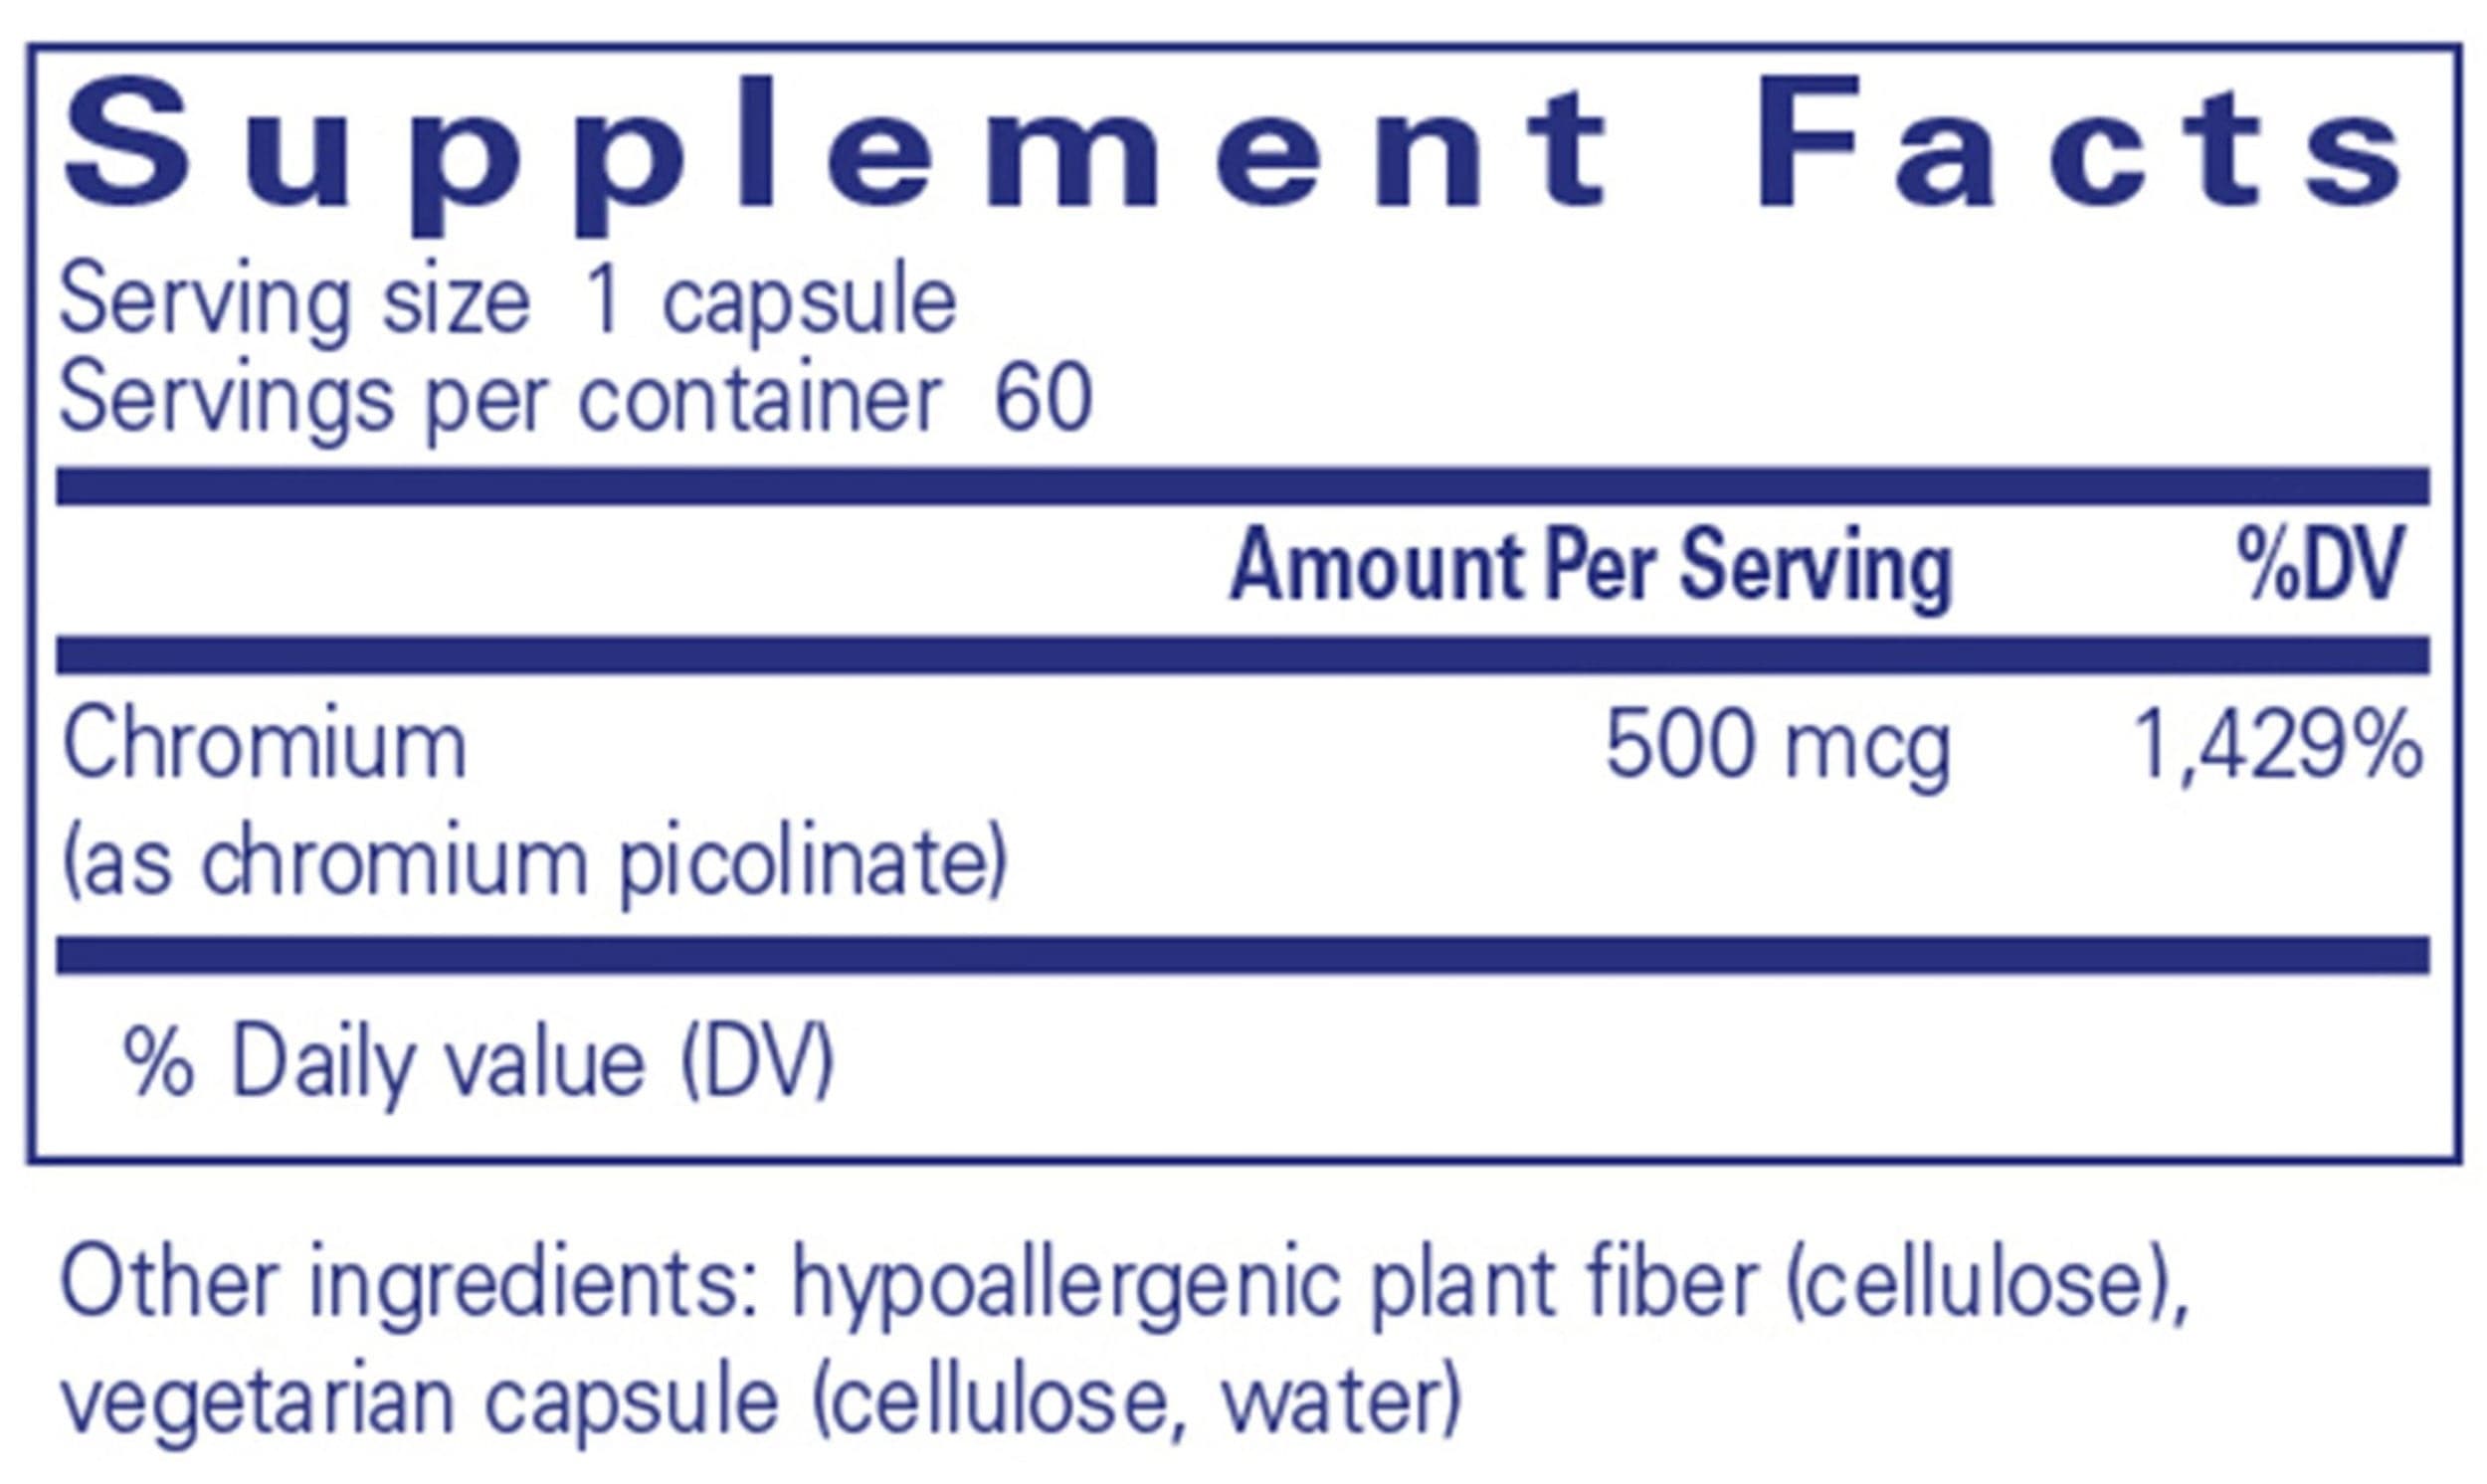 Pure Encapsulations Chromium (picolinate) 500mcg Ingredients 